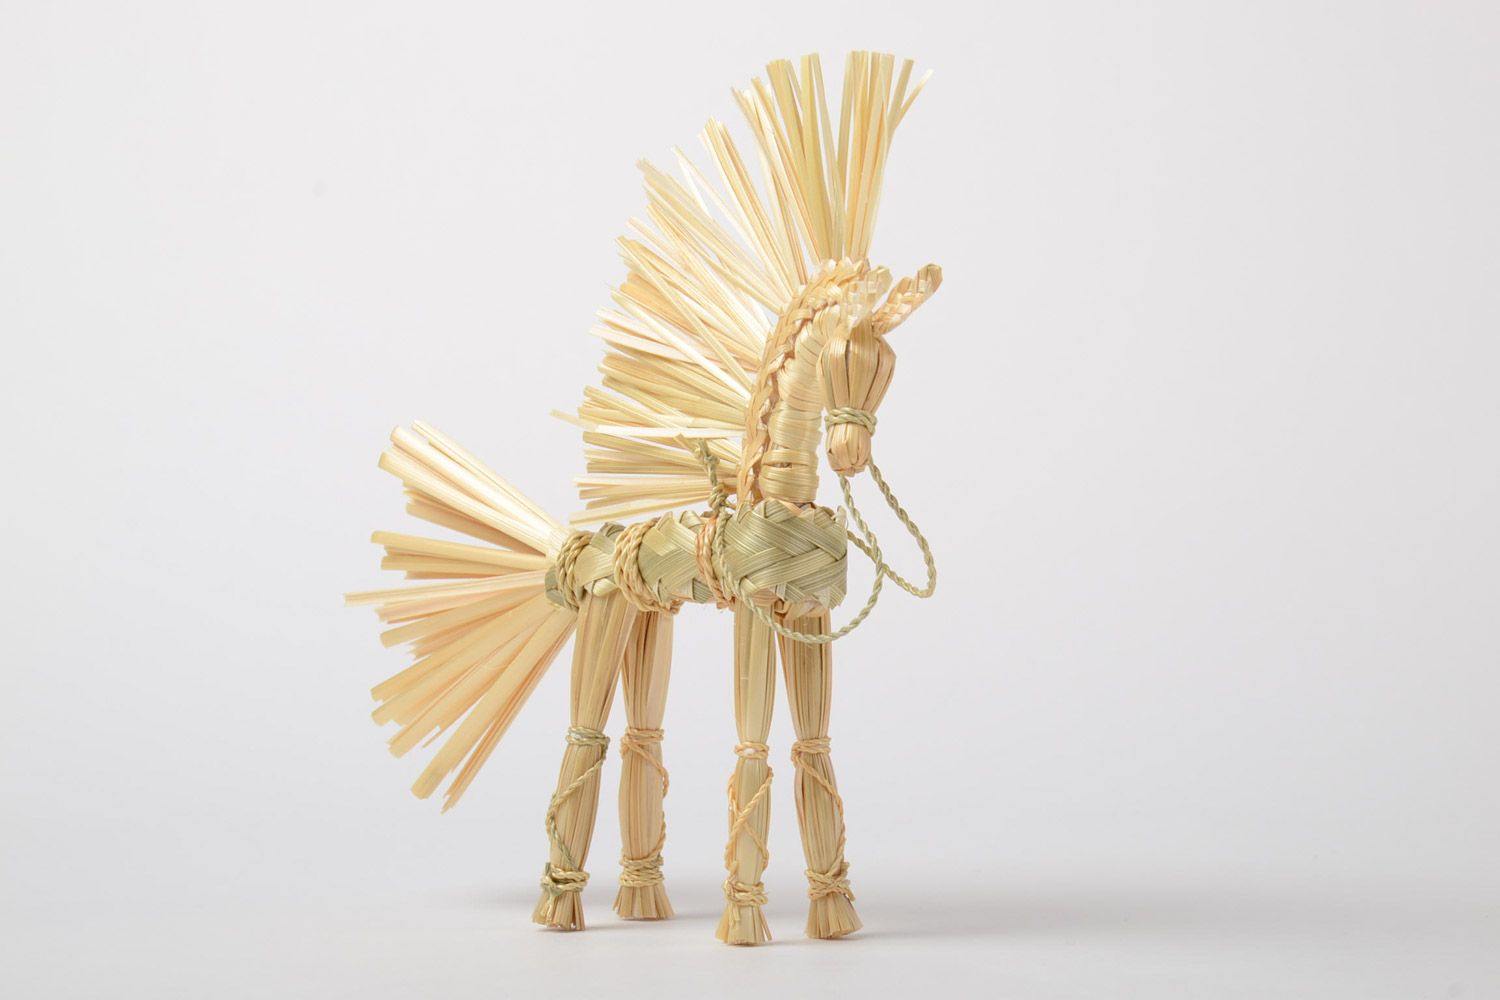 Handmade Spielzeug aus Stroh in Form von geflochtenem Pferd slawisch klein schön foto 5